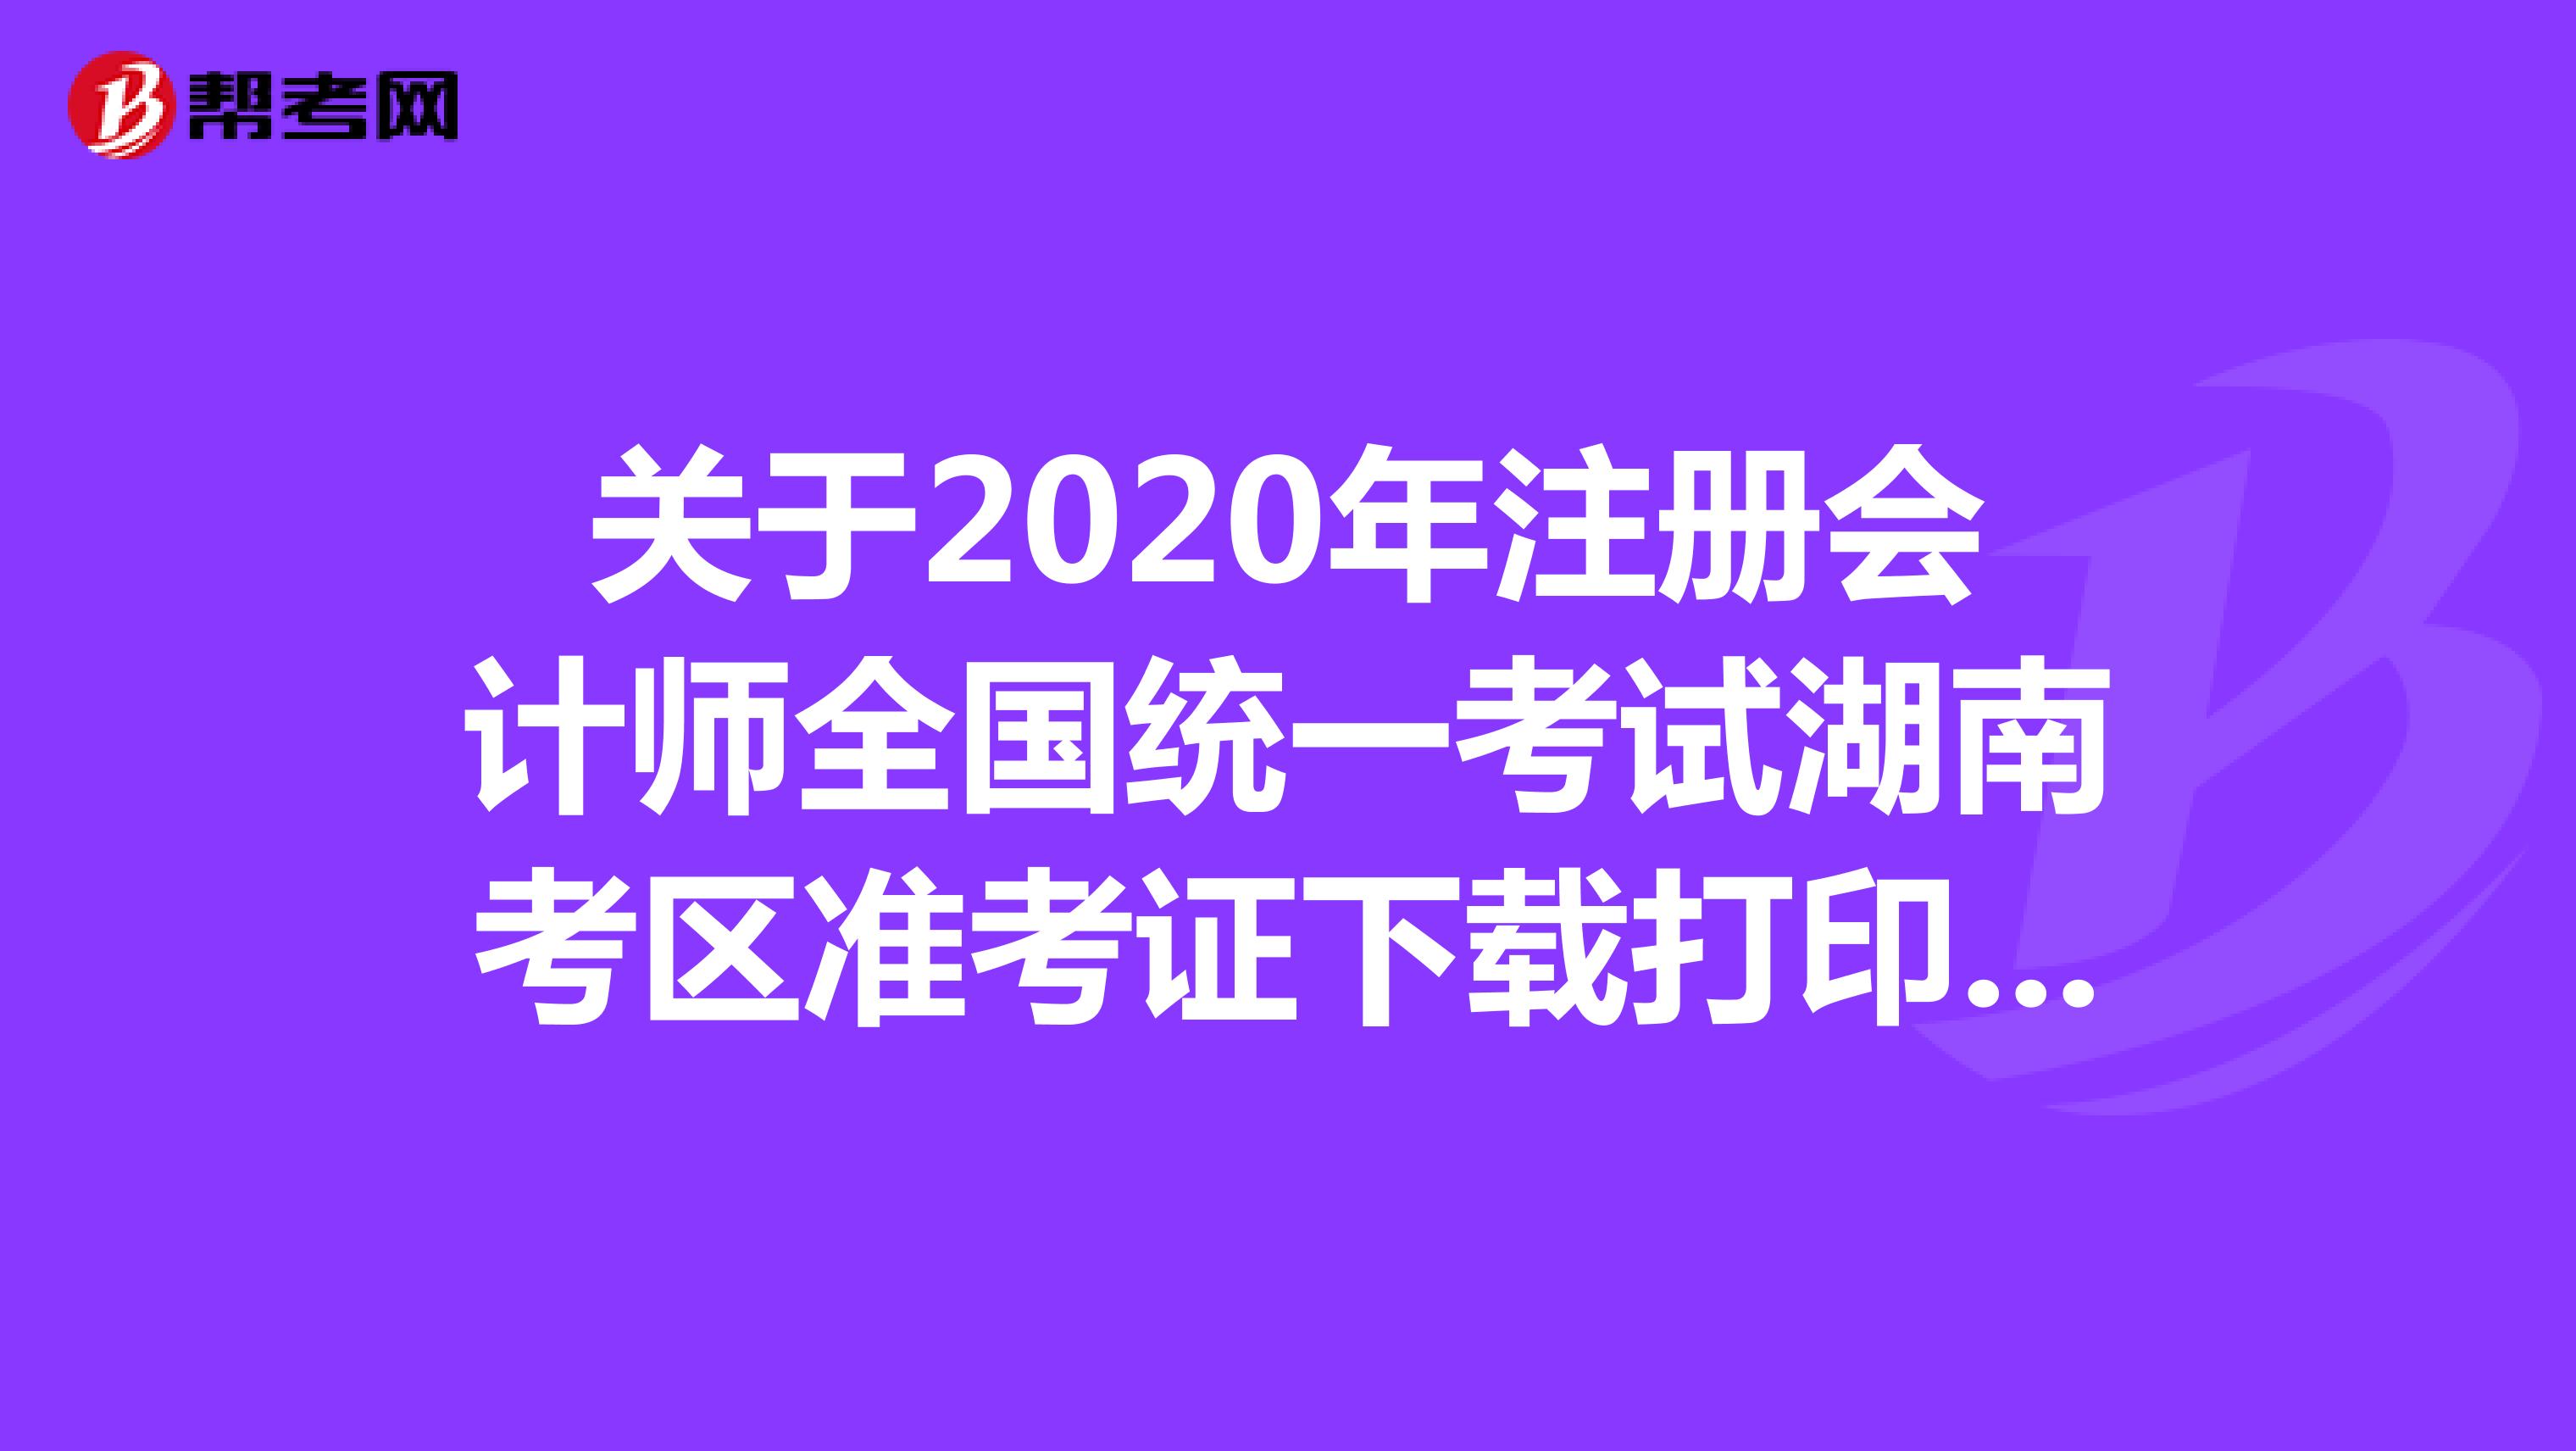 关于2020年注册会计师全国统一考试湖南考区准考证下载打印及考试时间的公告